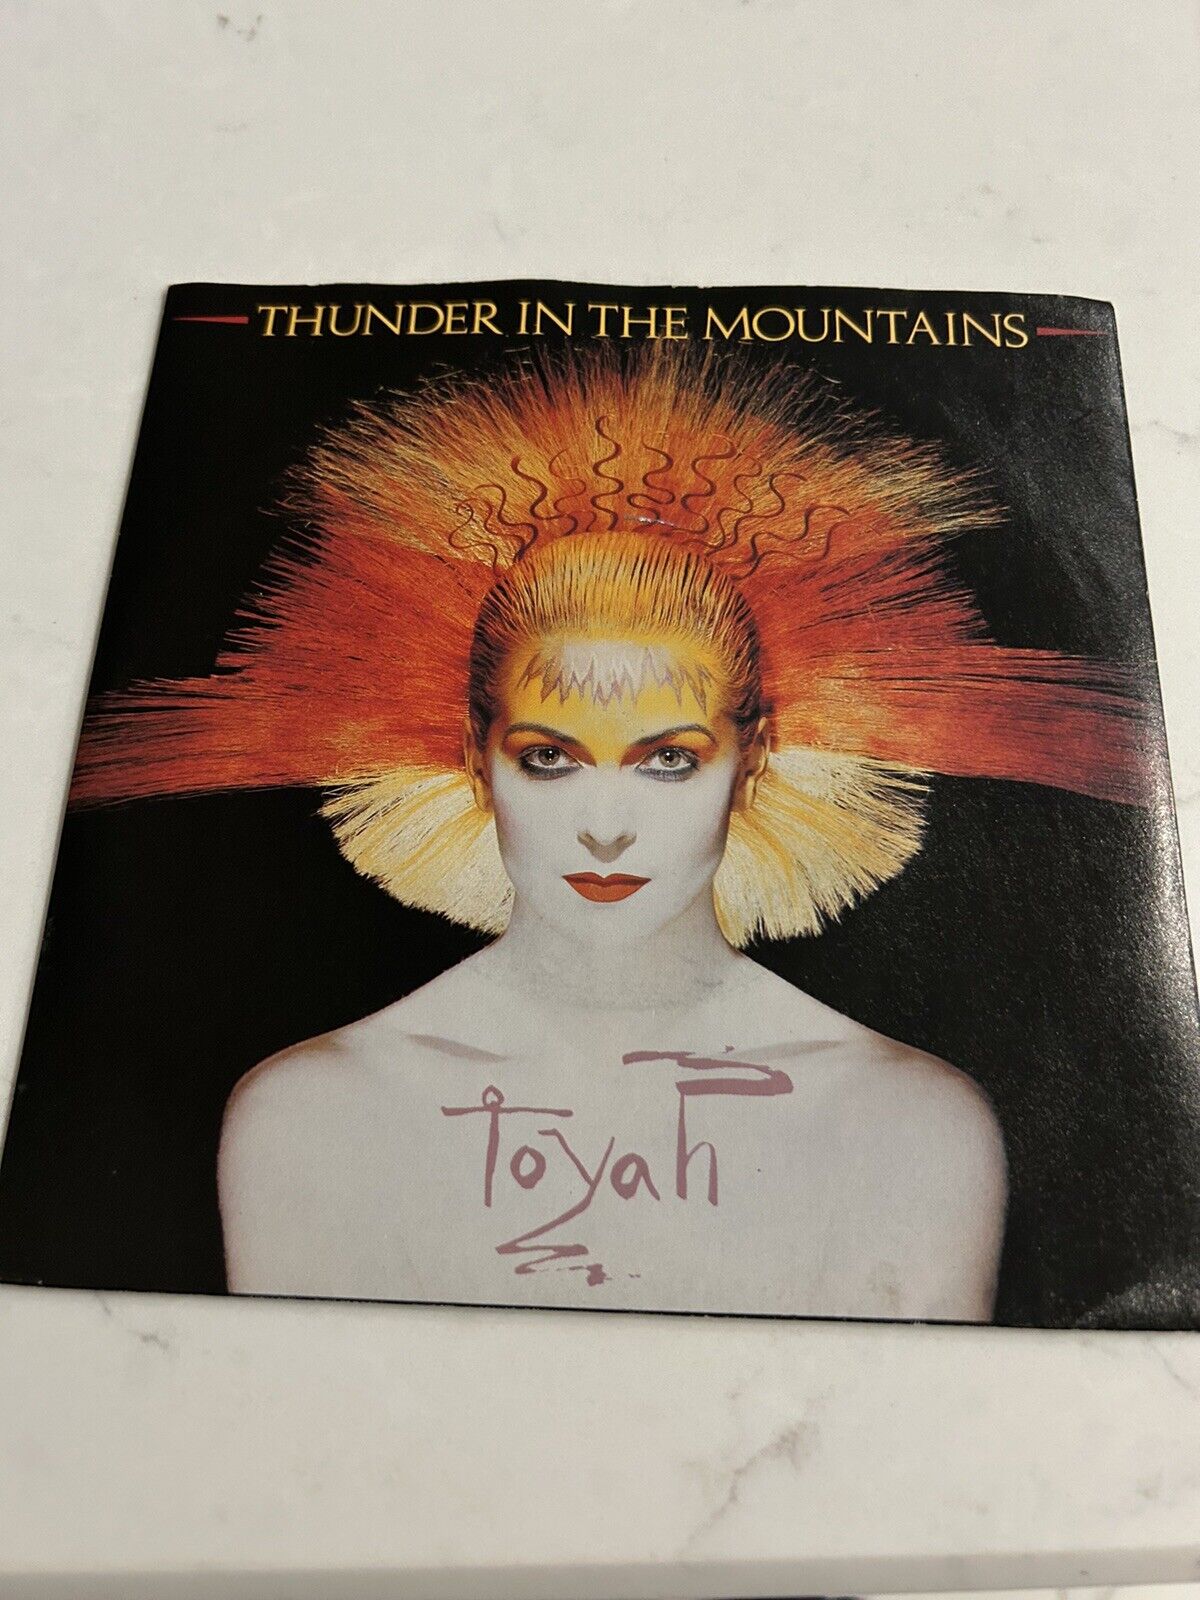 TOYAH 'Thunder In The Mountains / Street Addict' 1981 UK 7" vinyl